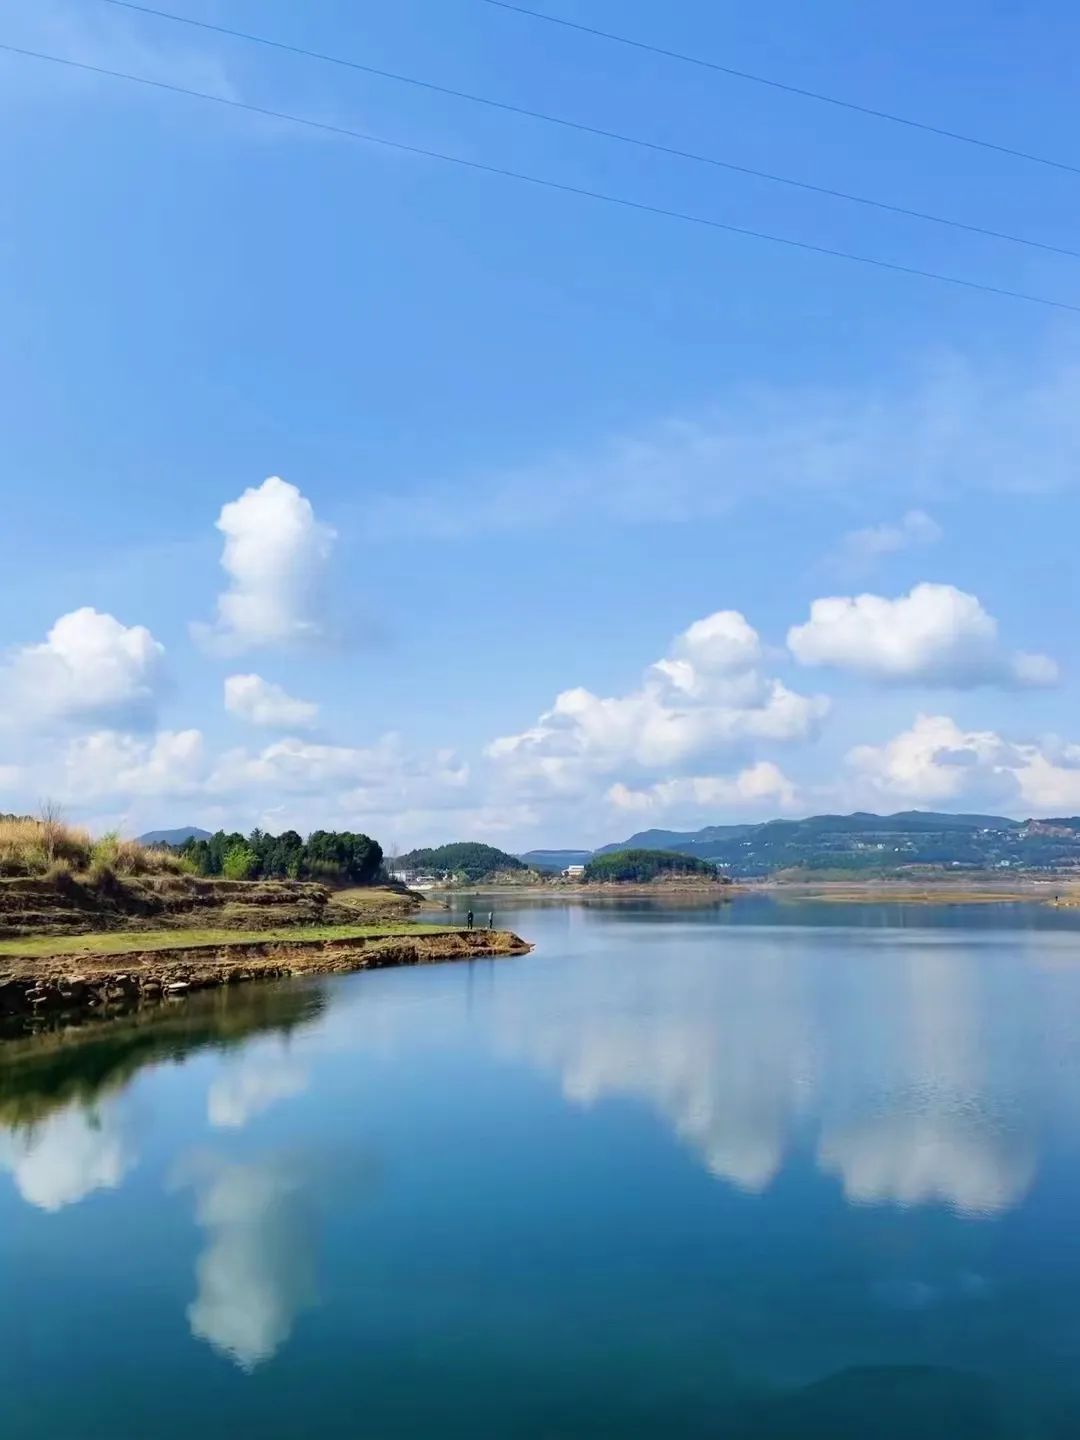 升钟湖风景图片